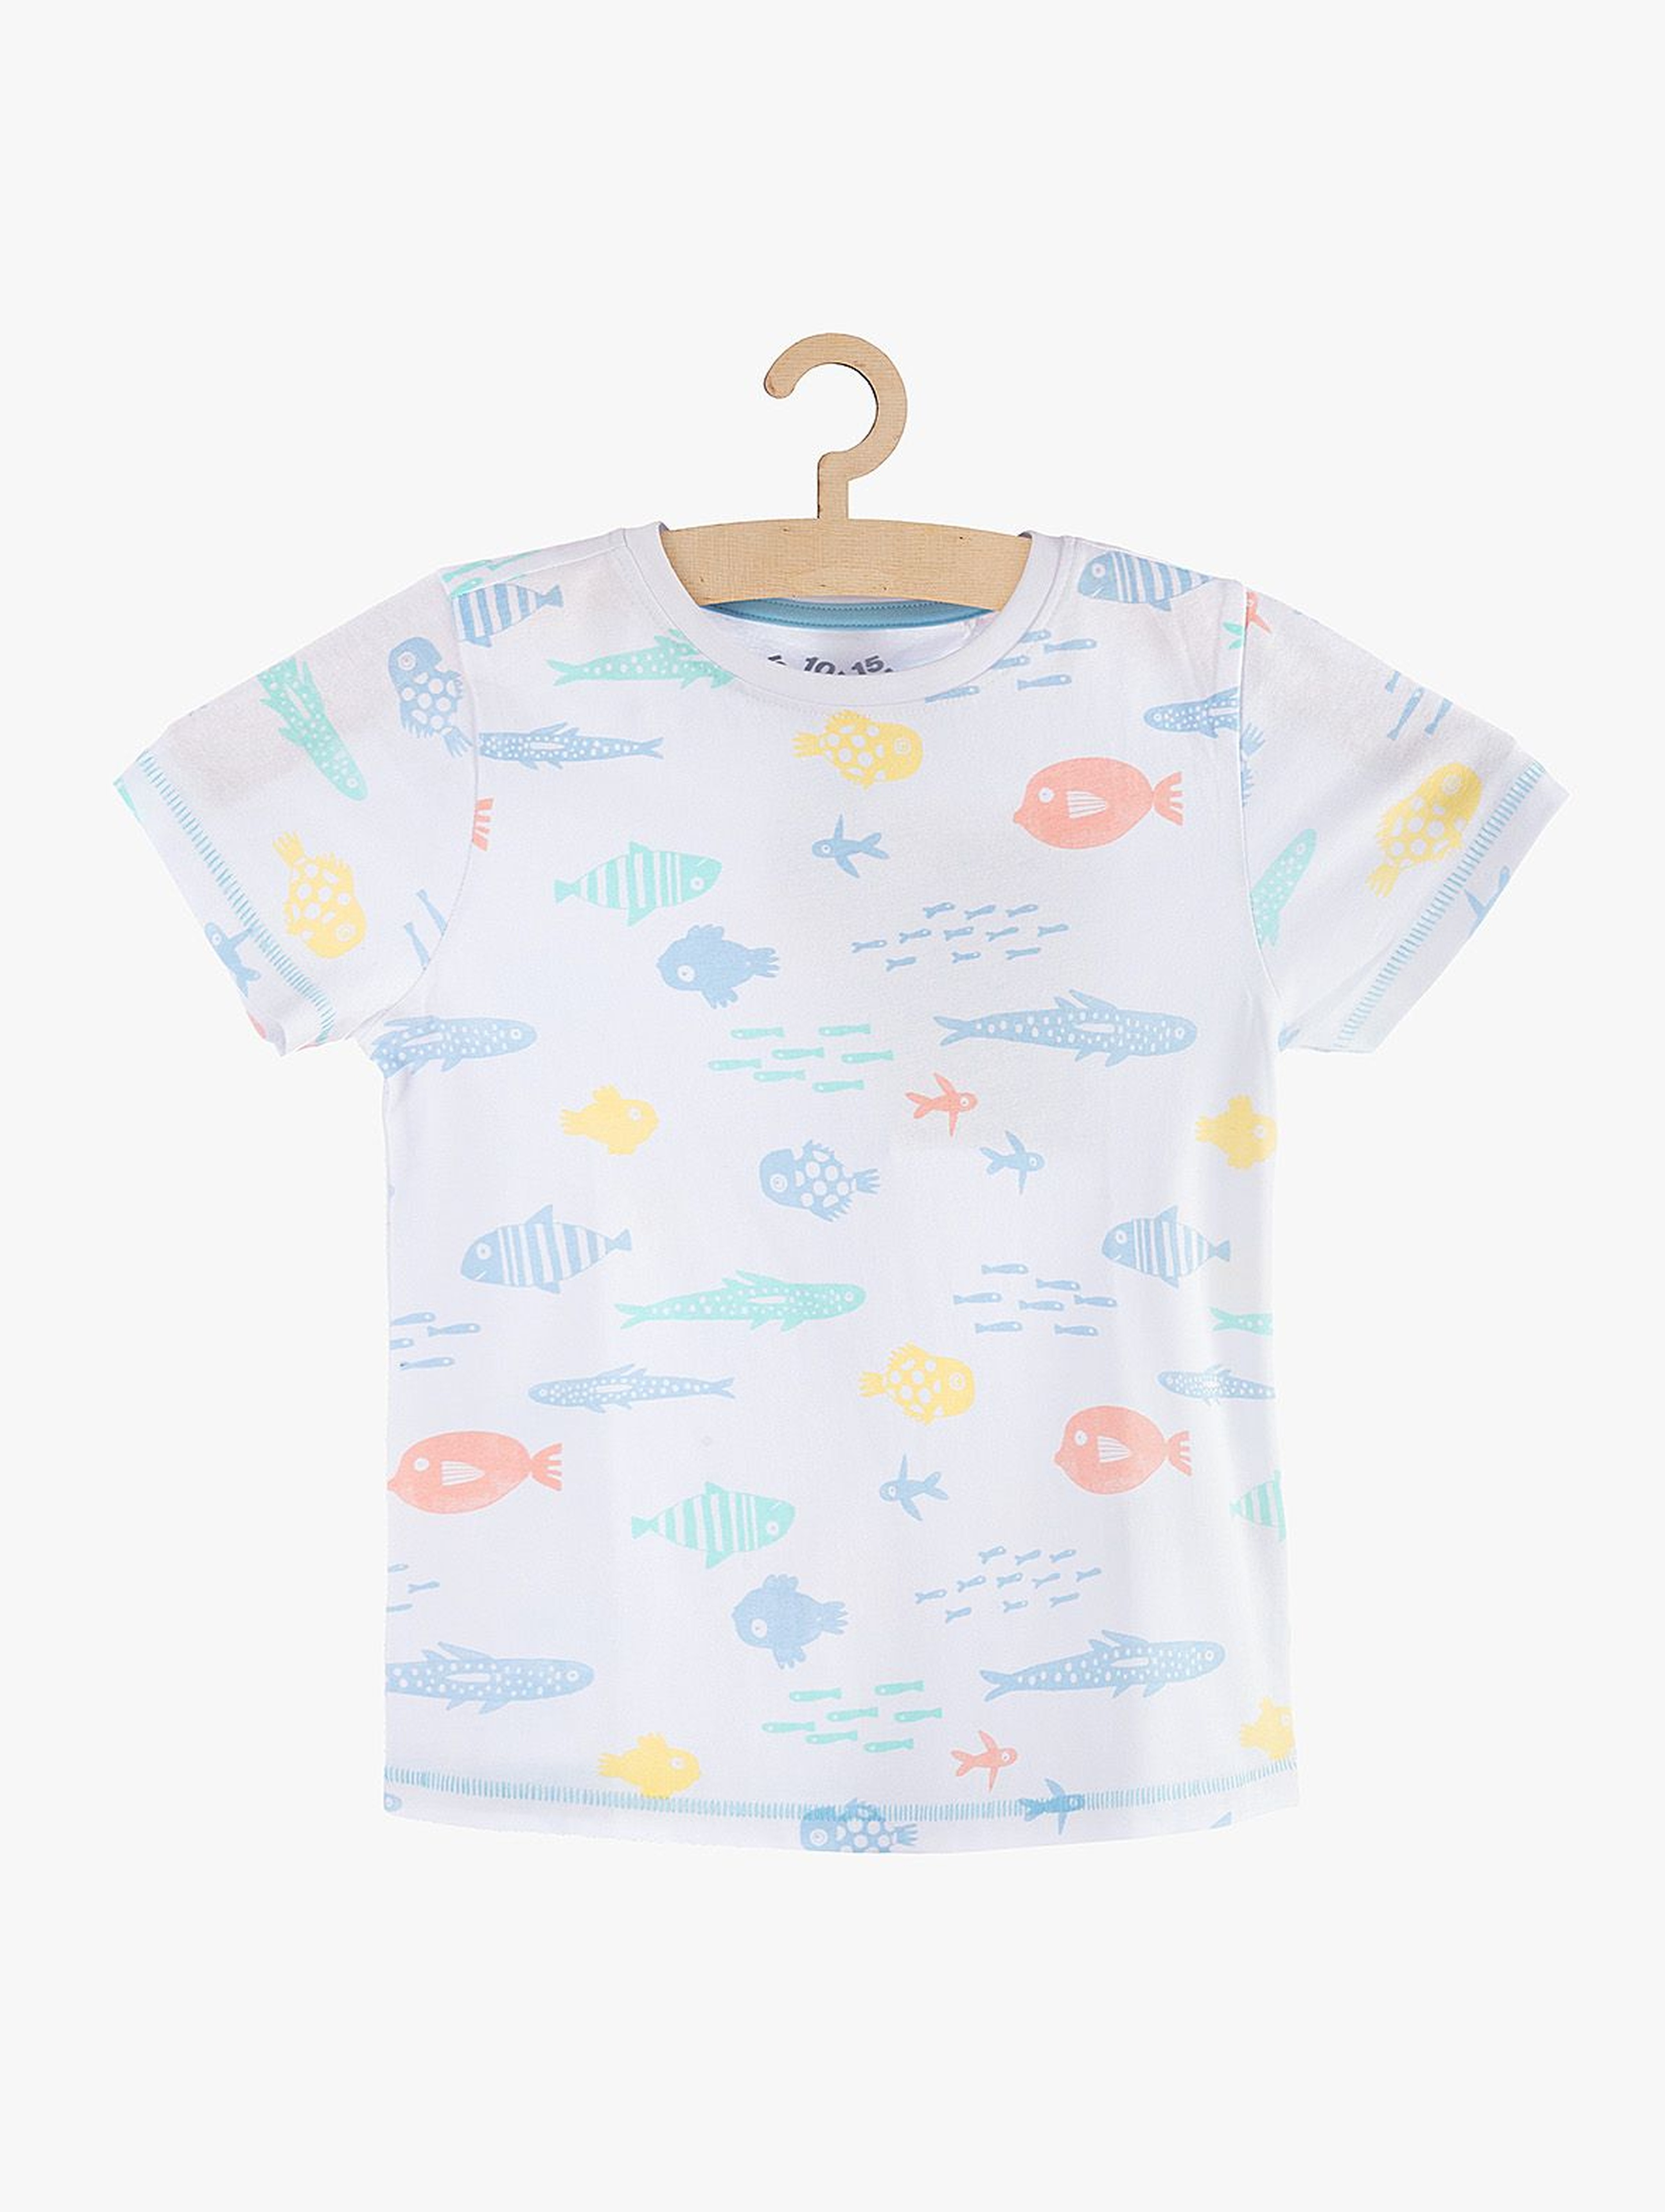 T-shirt chłopięcy biały w rybki